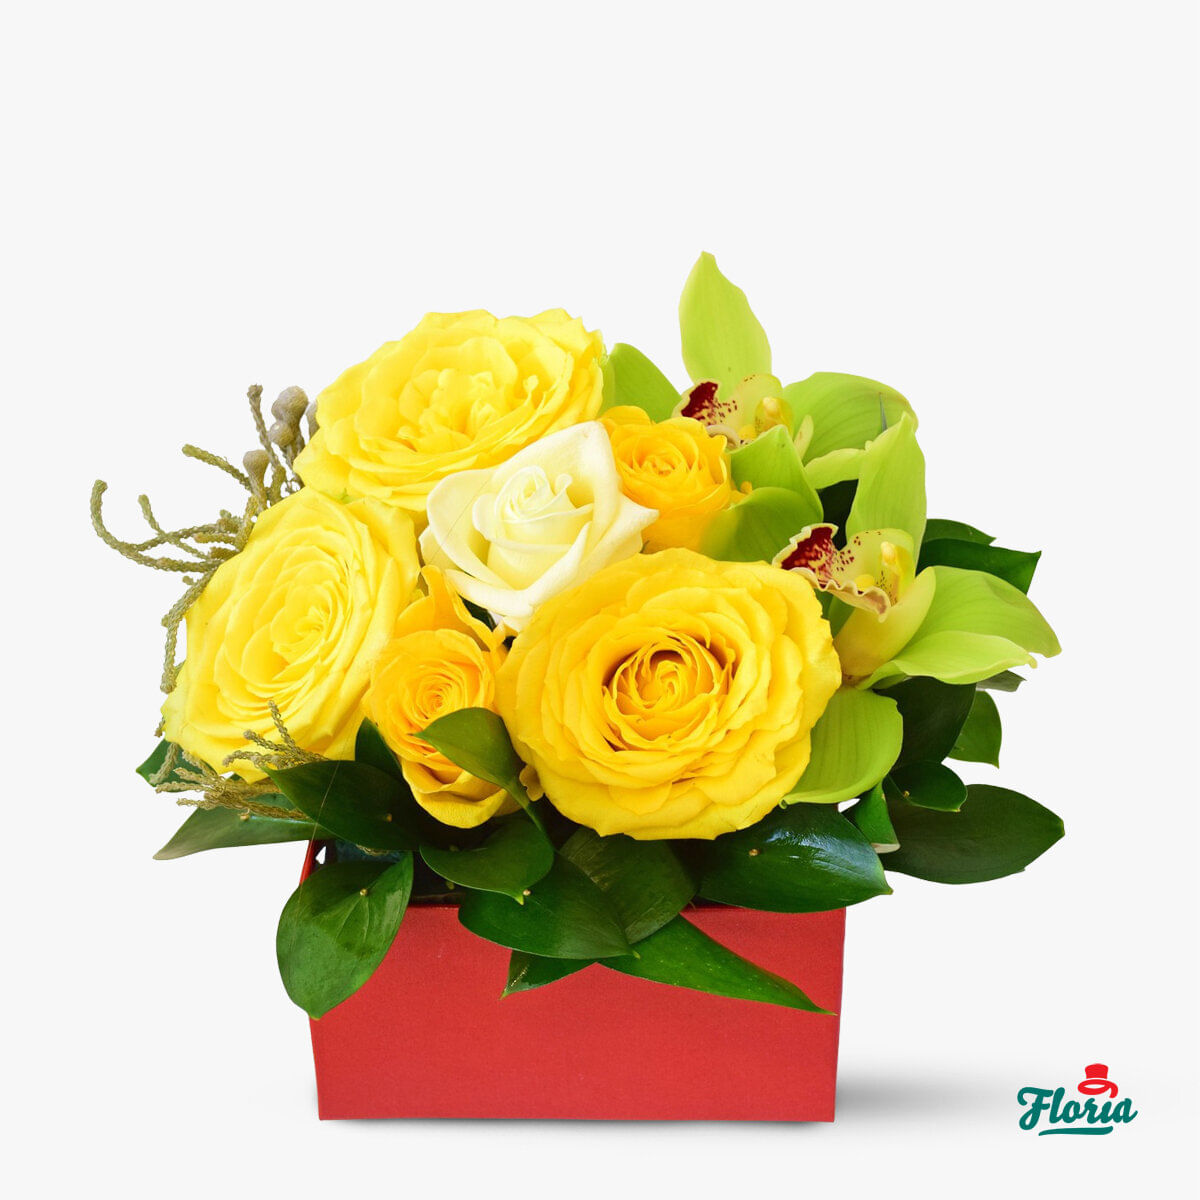 Cos cu flori – Fiori de flori – Standard Corporate